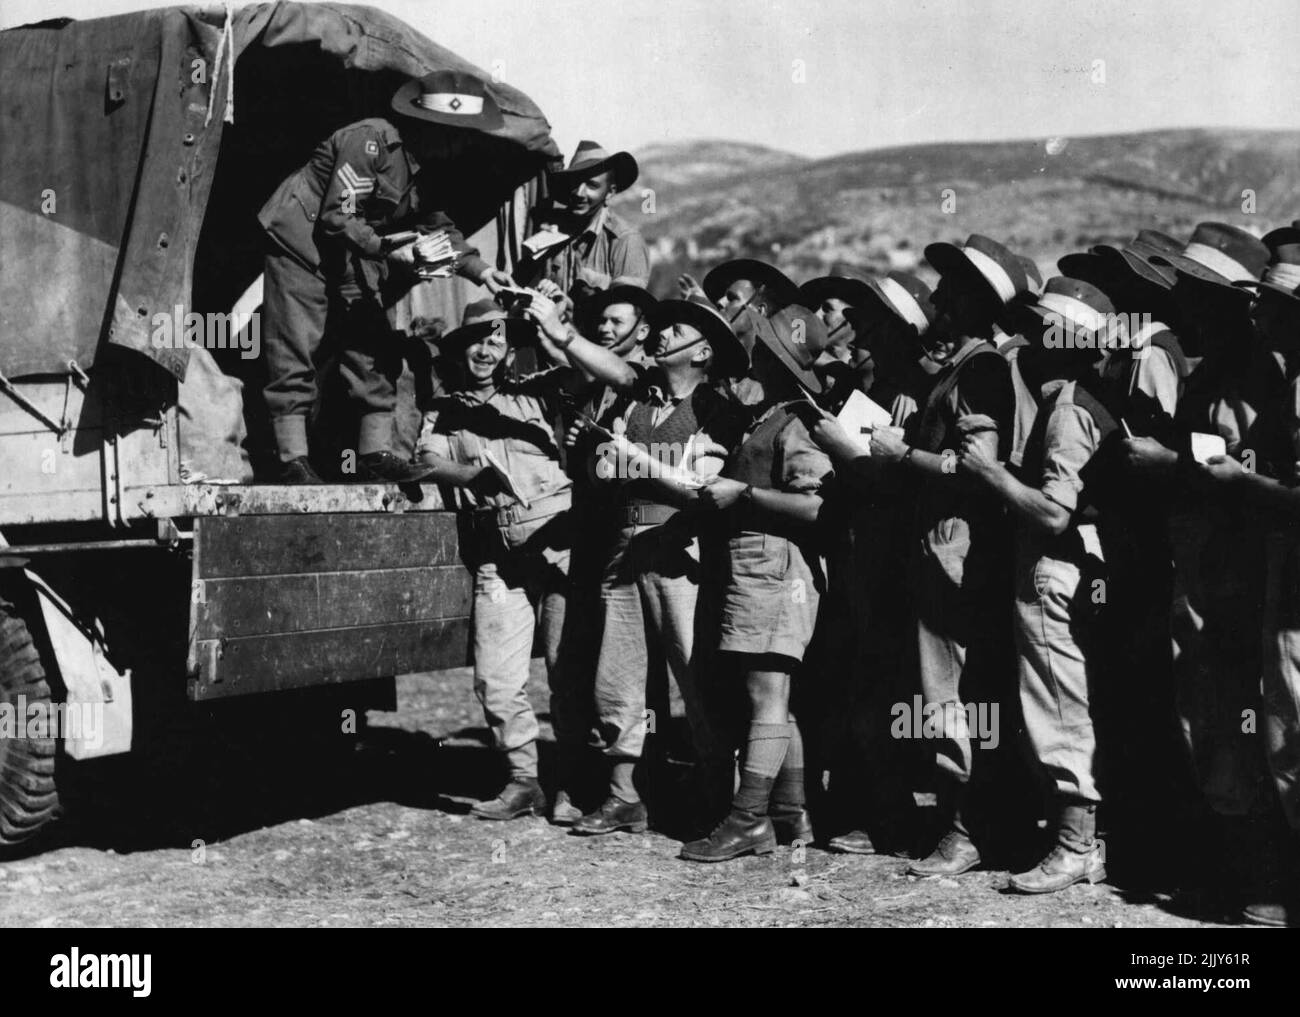 Endlich! Wie viele Emotionen auf diesen Gesichtern? -- nur eine, wenn die Post verteilt wird. Szene in einem australischen Postamt im Nahen Osten. 29. Januar 1942. (Foto von A.I.F. Foto). Stockfoto